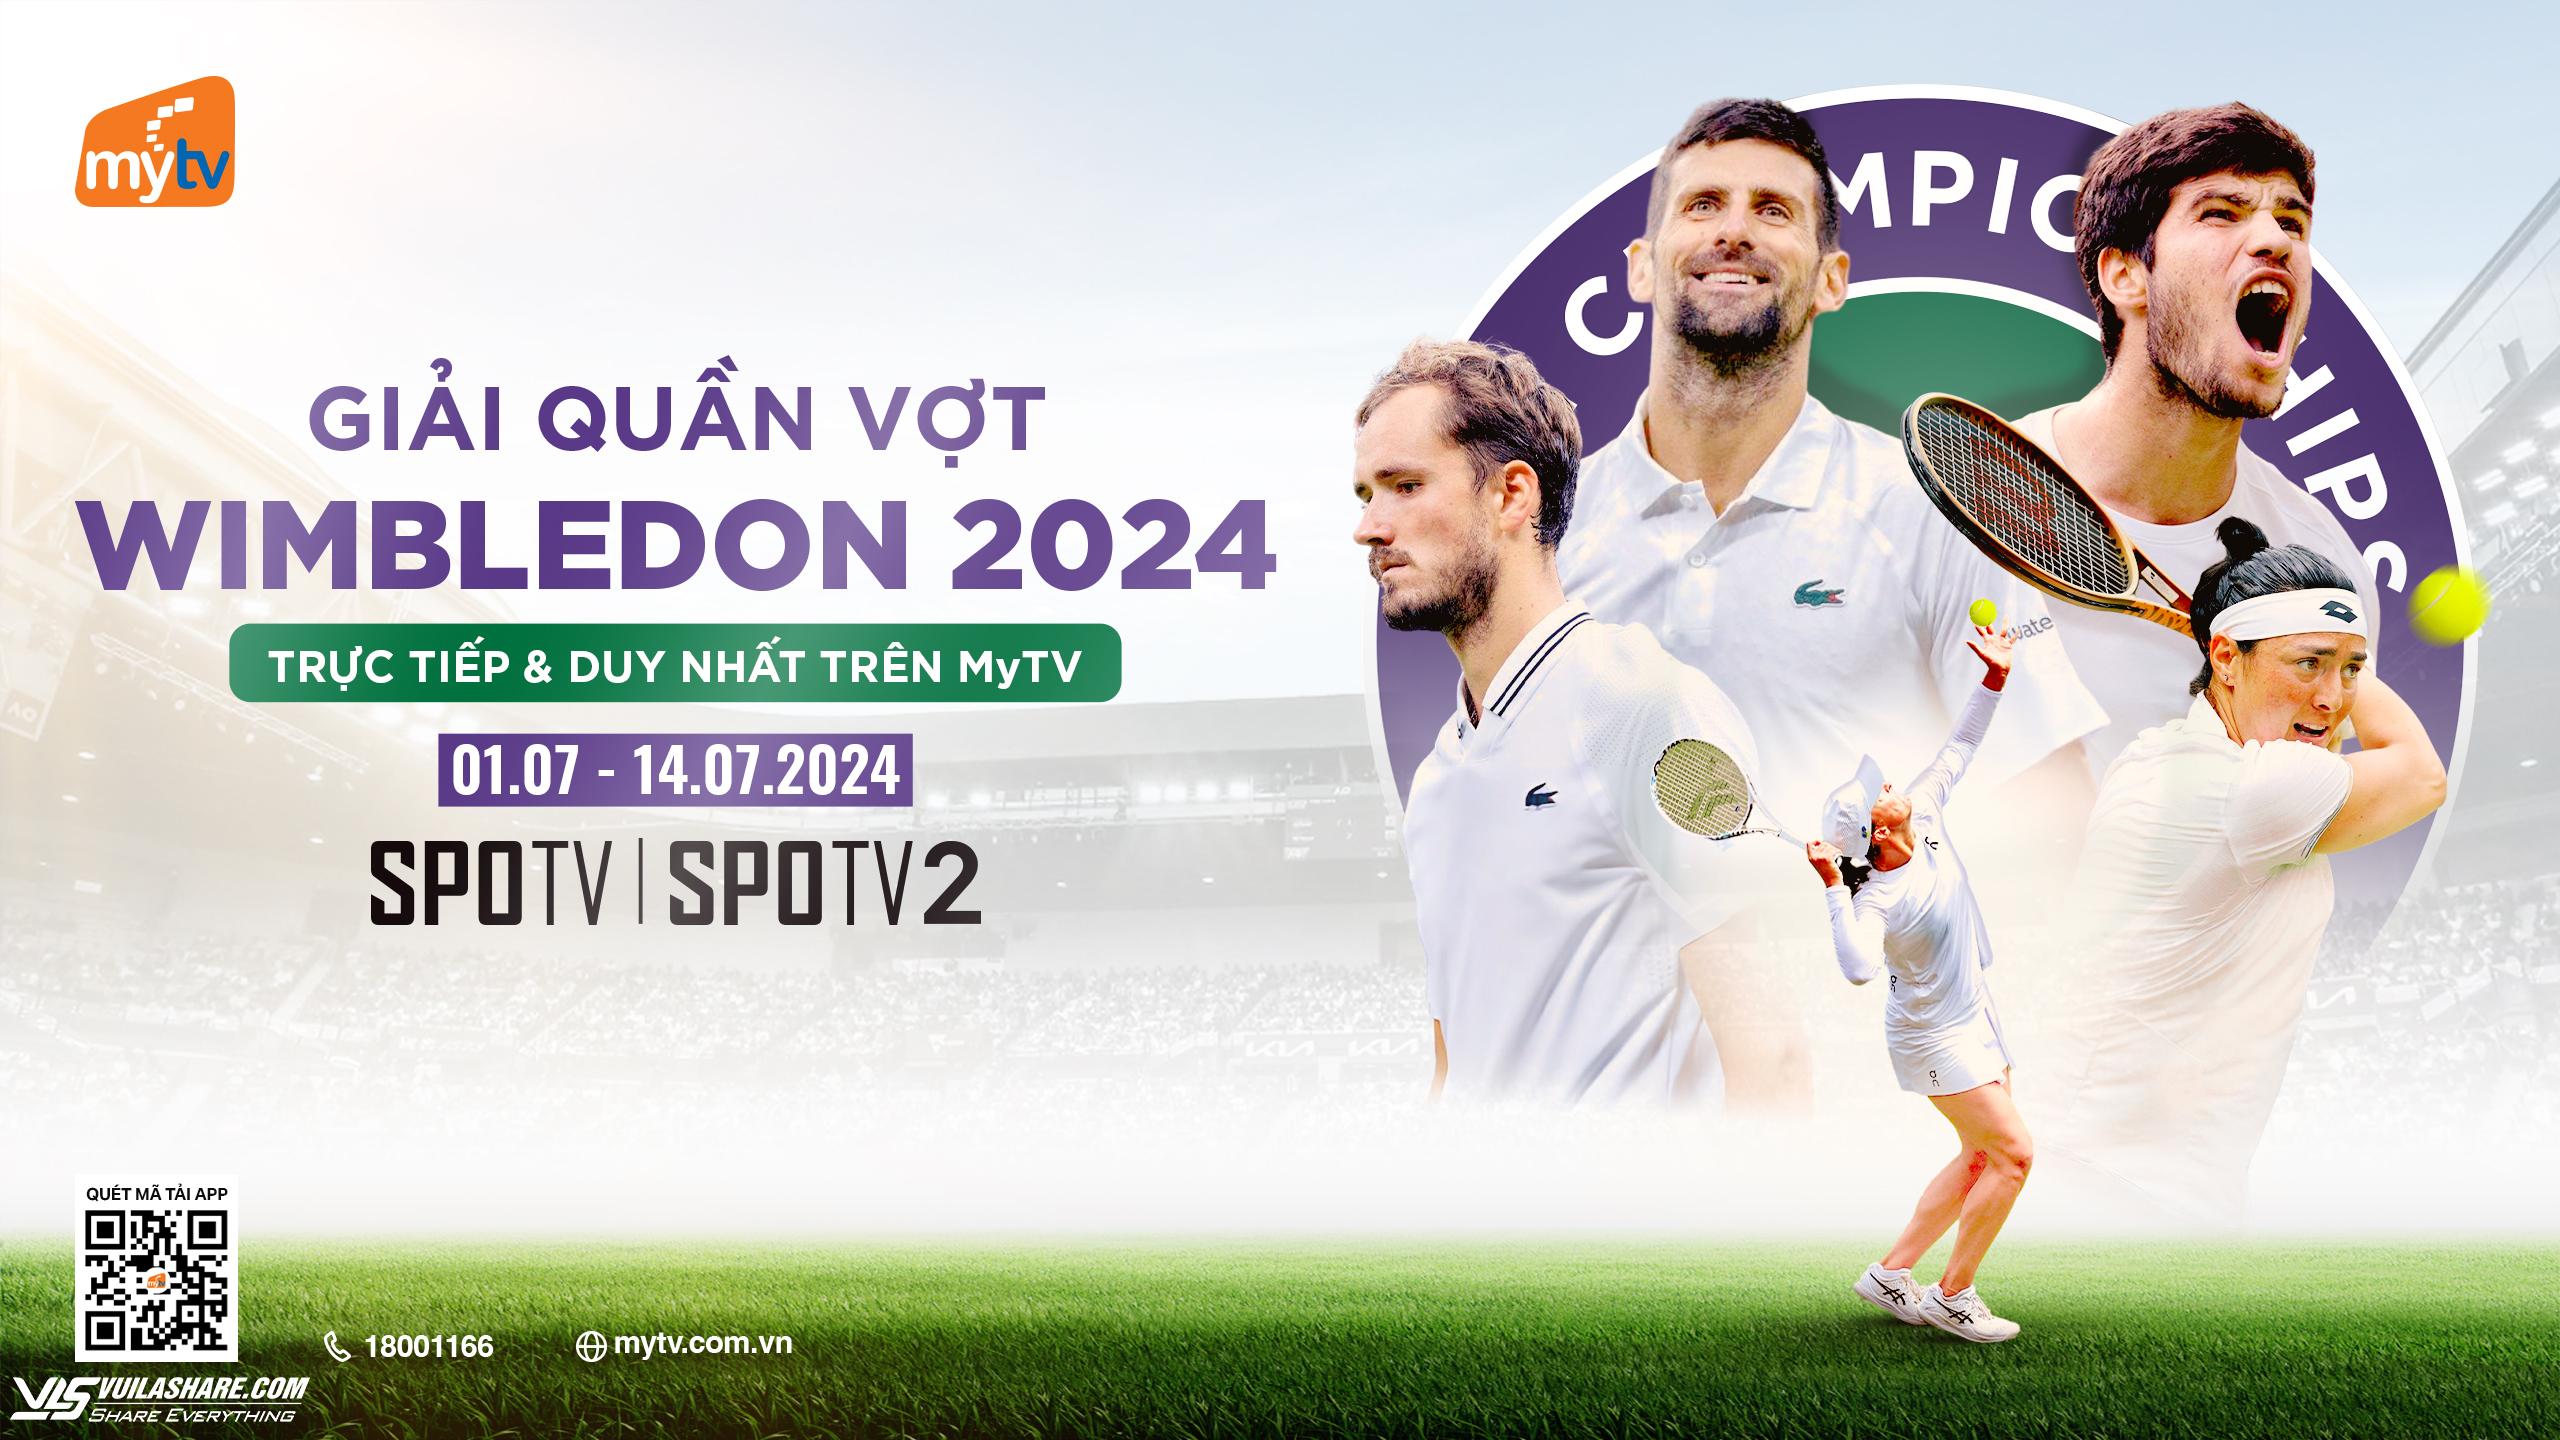 Xem trực tiếp giải quần vợt Wimbledon 2024 trên MyTV- Ảnh 1.